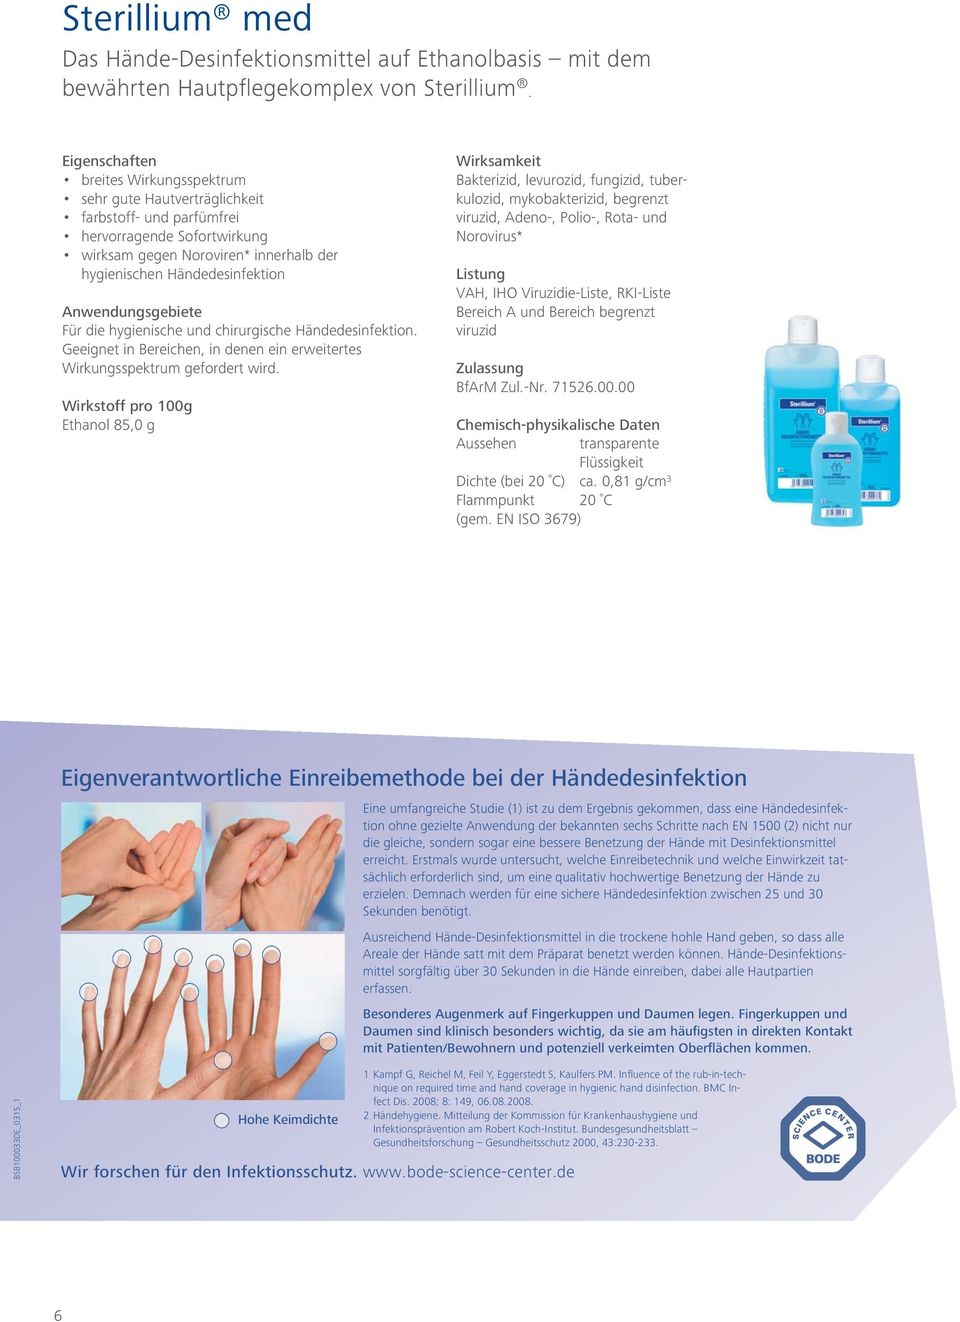 Anwendungsgebiete Für die hygienische und chirurgische Händedesinfektion. Geeignet in Bereichen, in denen ein erweitertes Wirkungsspektrum gefordert wird.